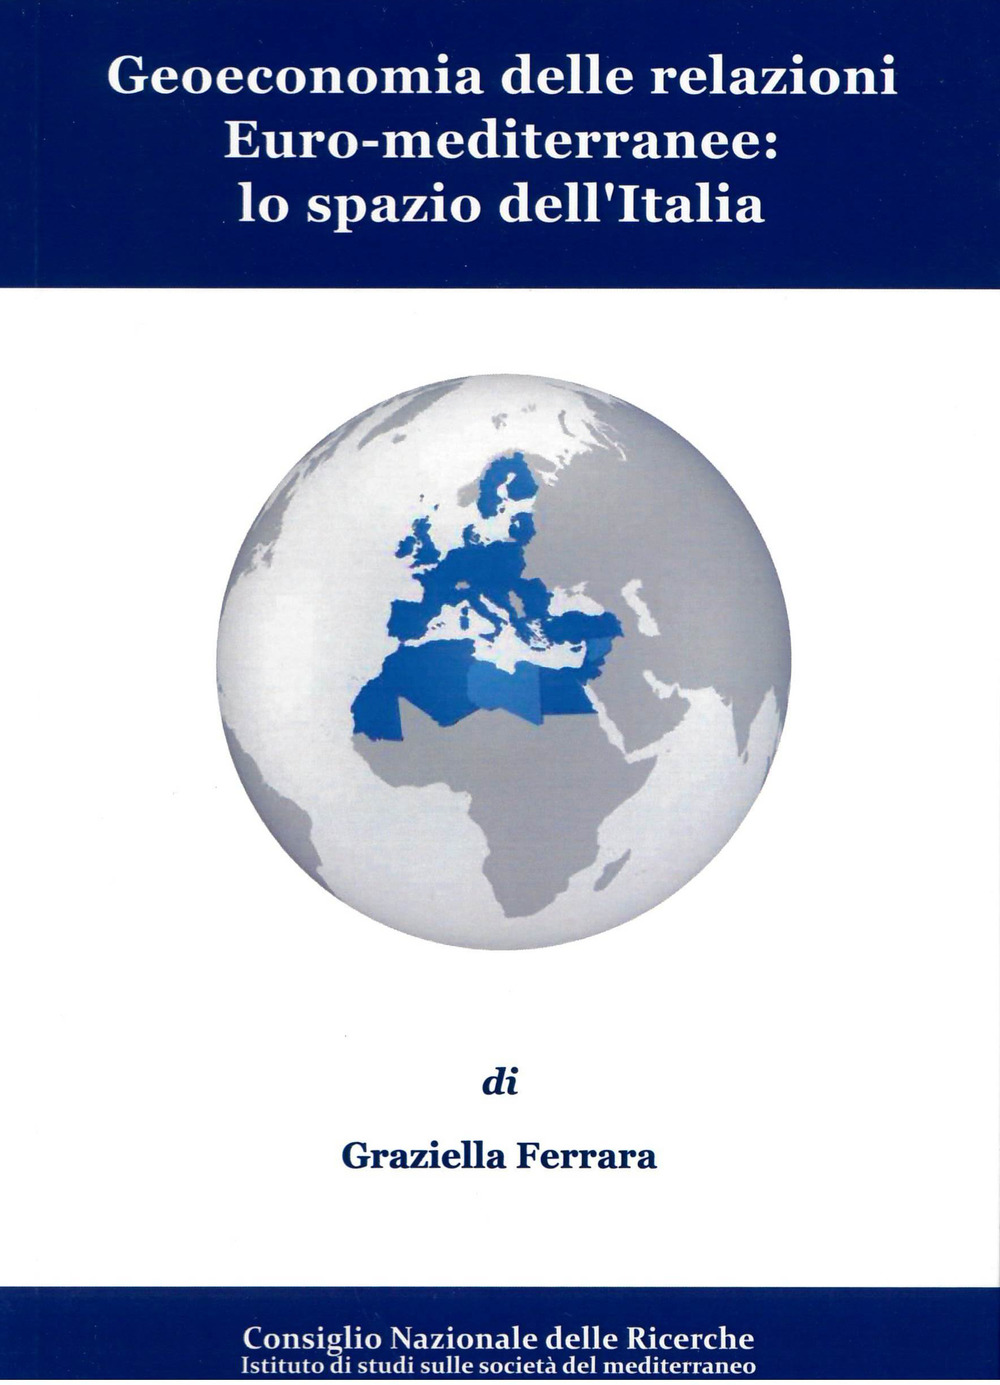 Geoeconomia delle relazioni euro-mediterranee: lo spazio dell'Italia